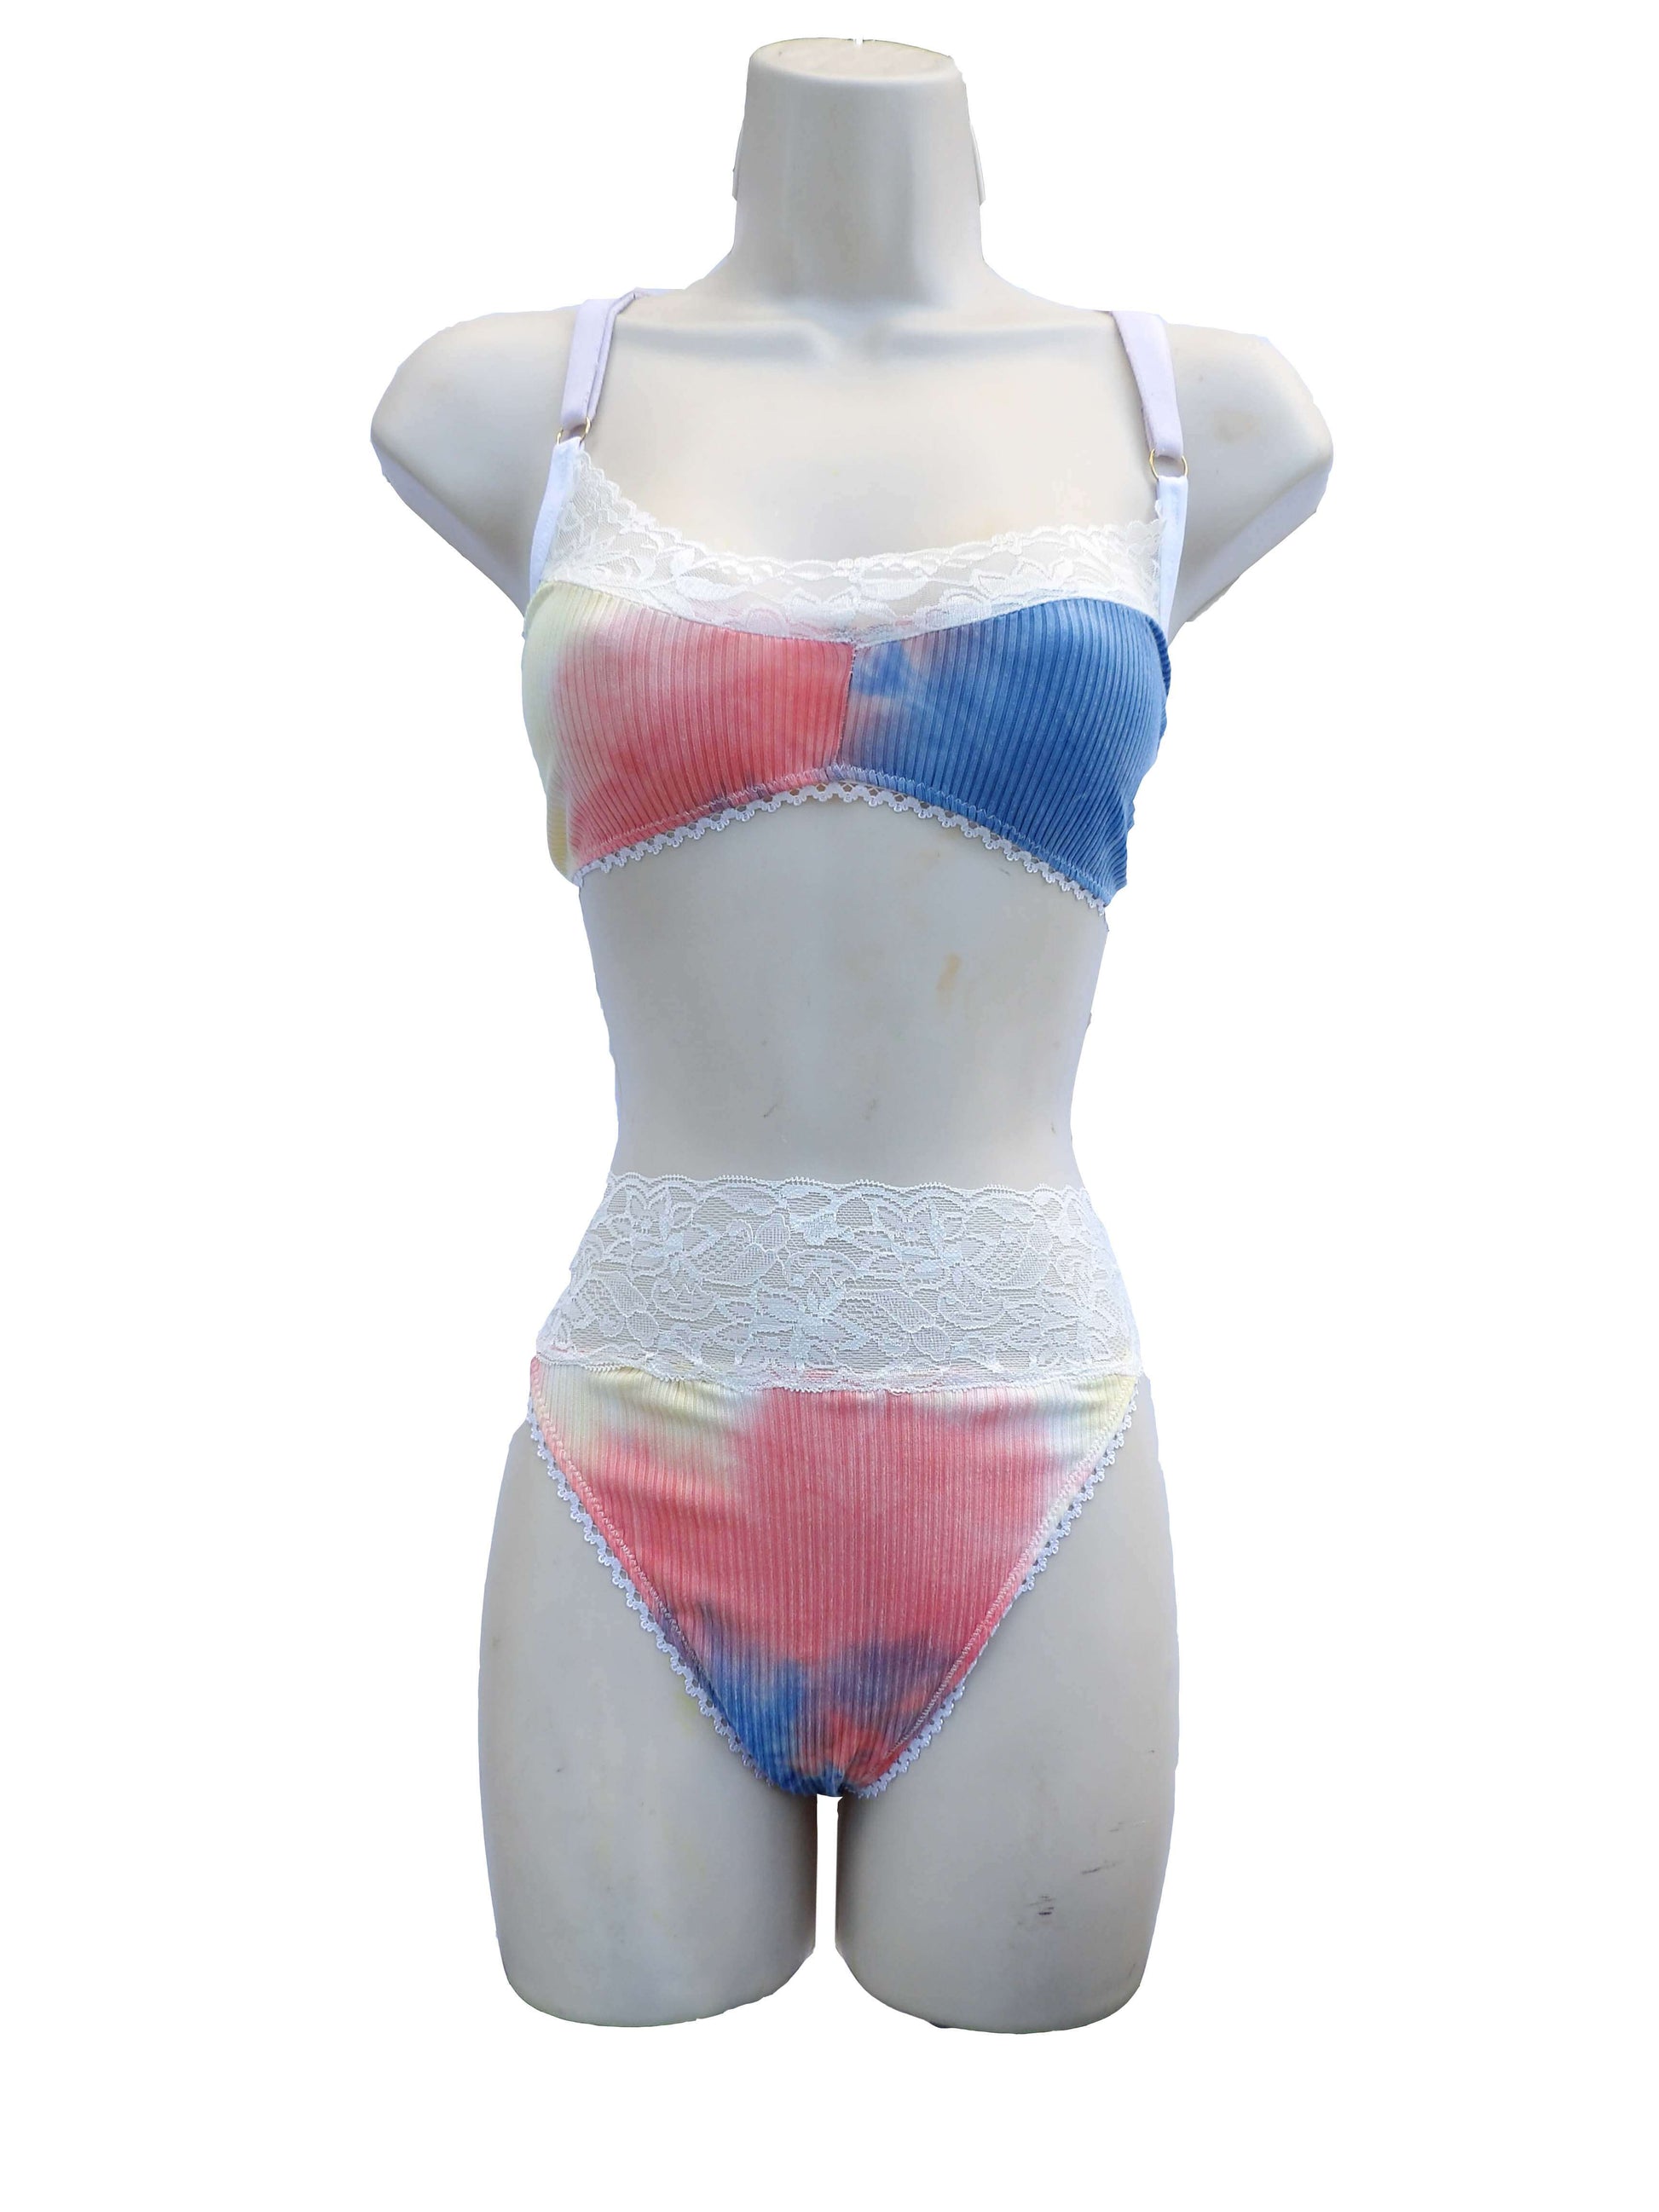 unique pastel tie dye lingerie on mannequin